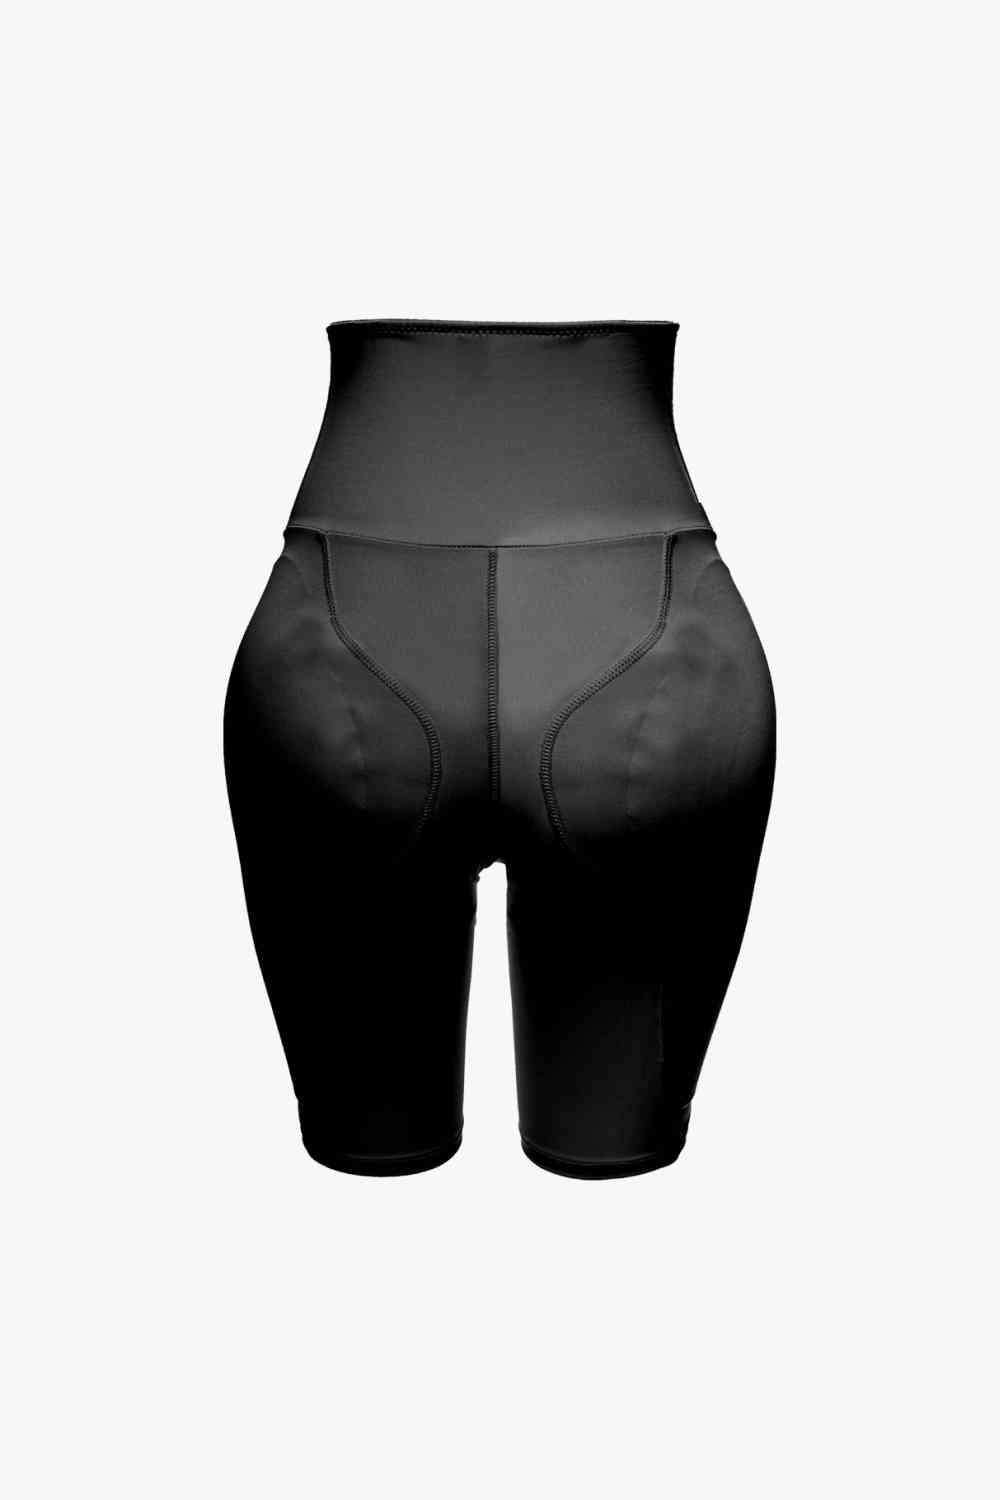 Pantalones cortos moldeadores sin cordones de cintura alta de tamaño completo